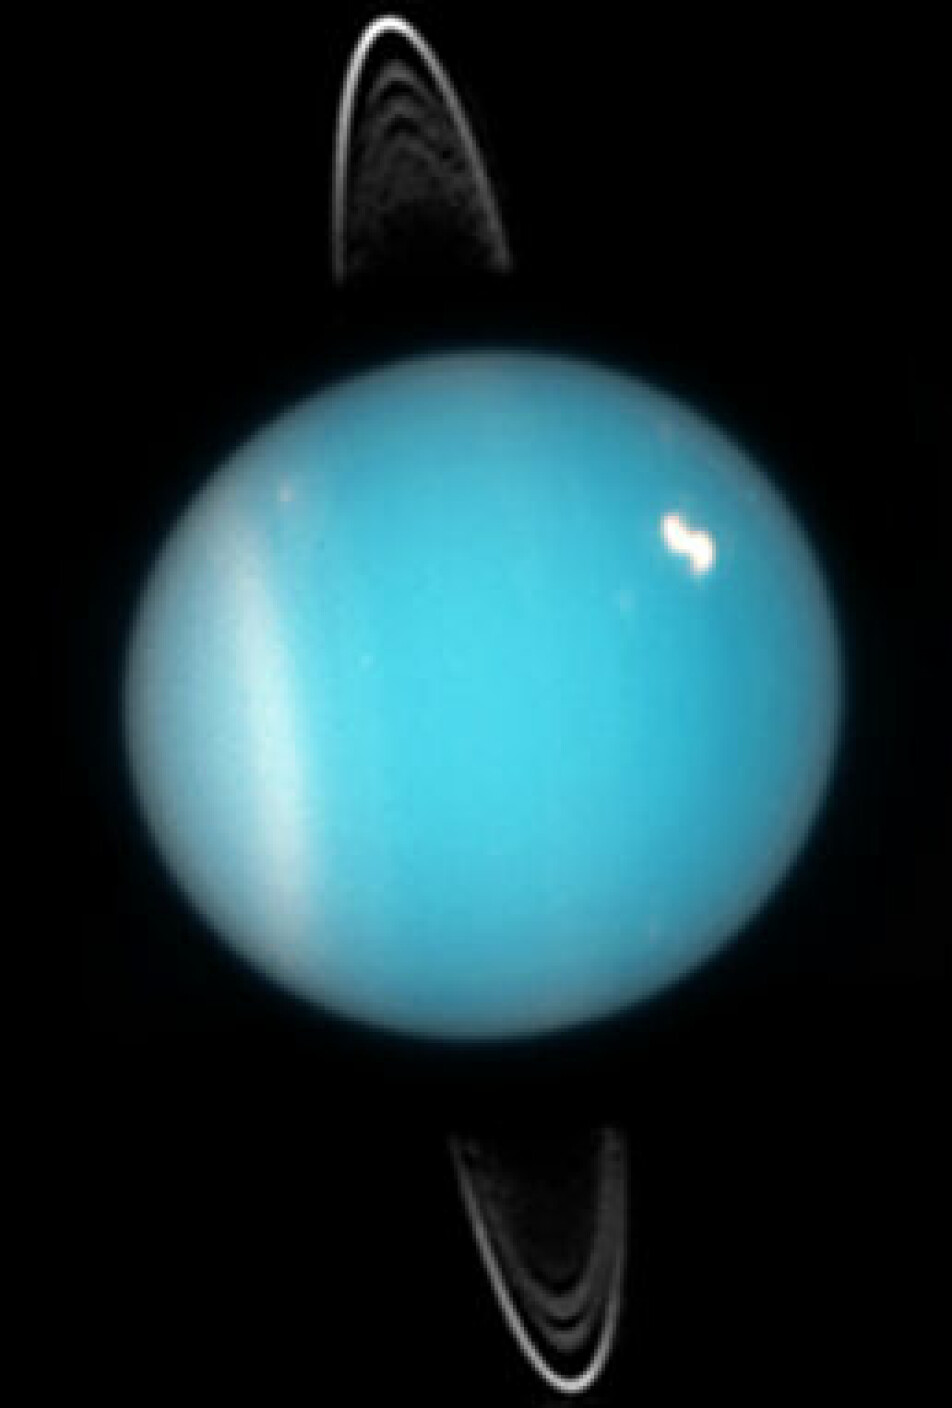 Uranus sett av Hubble-teleskopet. Legg merke til at ringene ligger omtrent 90 grader over på siden. De ligger rundt Uranus' ekvator, fordi hele planeten ligger på siden.